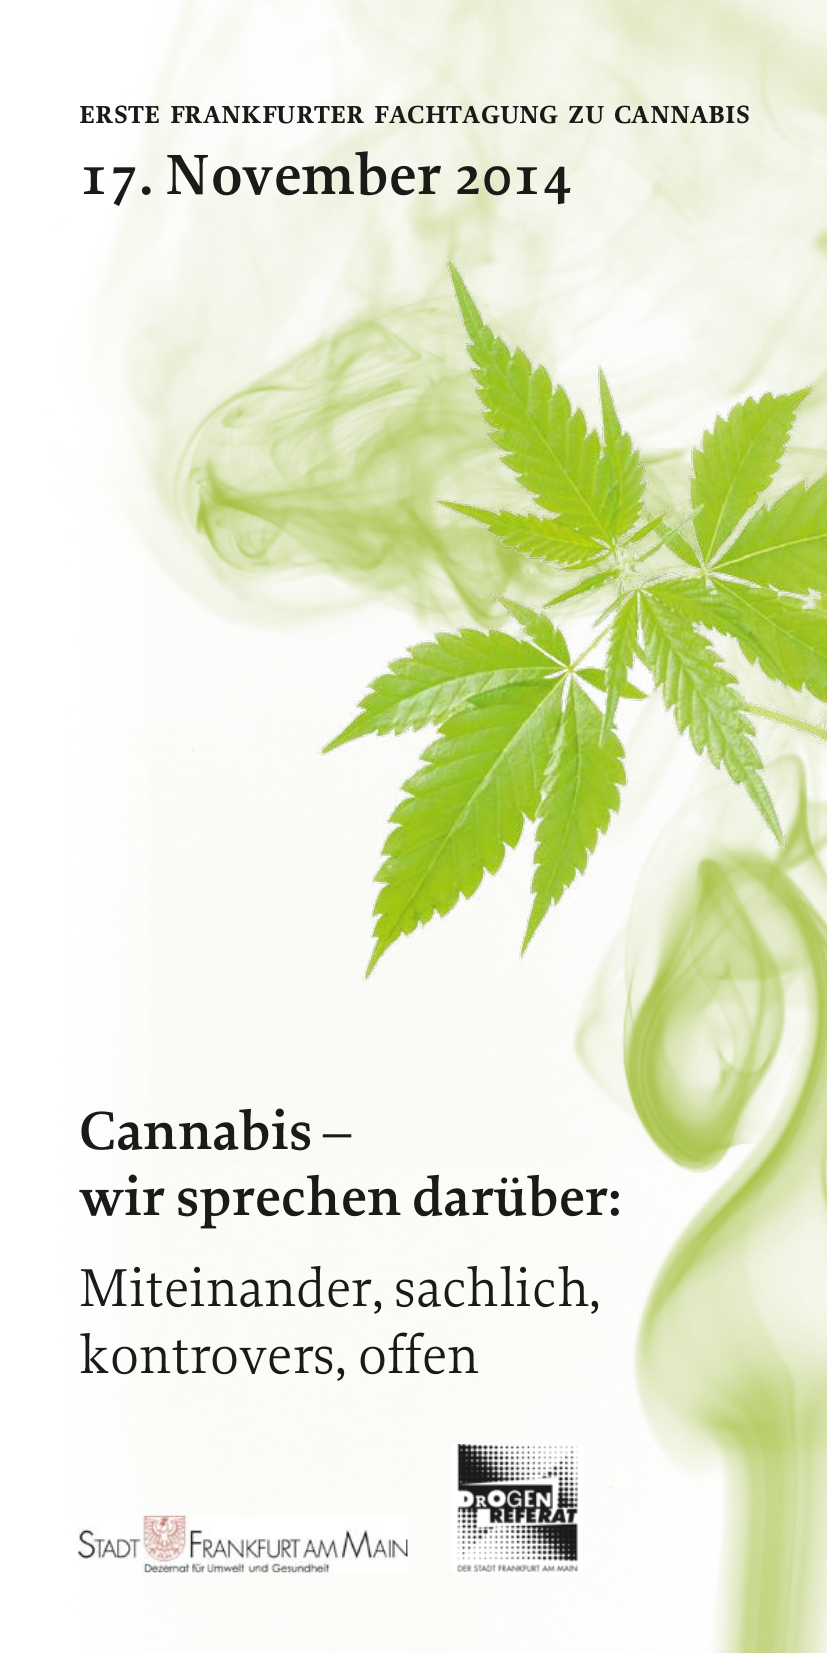 Ersten Frankfurter Fachtagung zu Cannabis – Beiträge online verfügbar